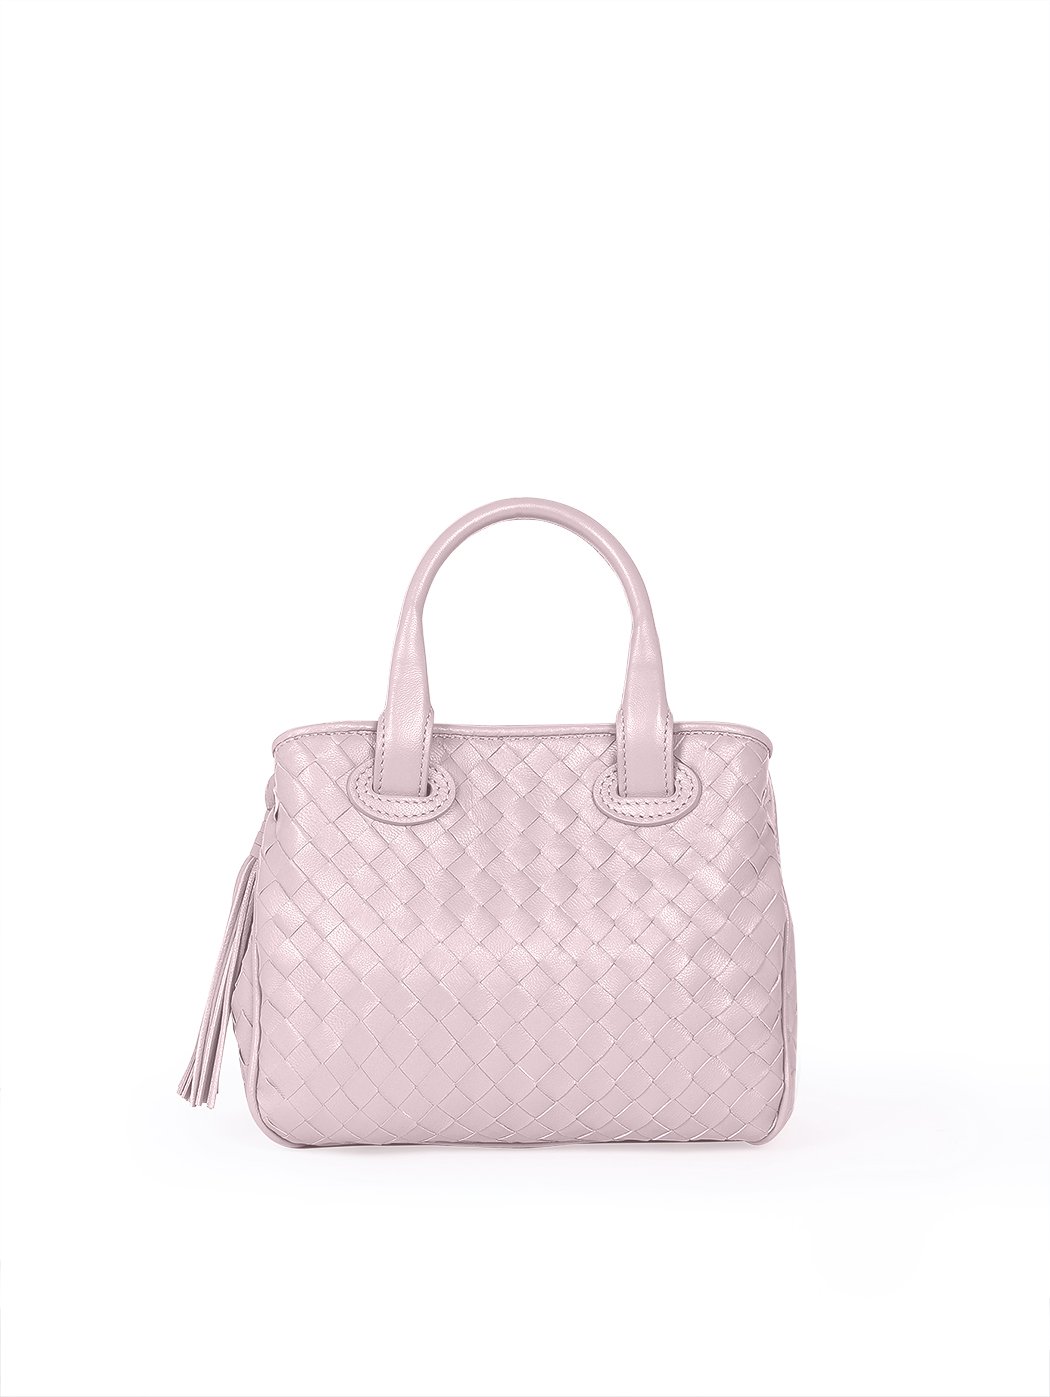 Женская плетеная сумочка коллекции Intrecci розового цвета